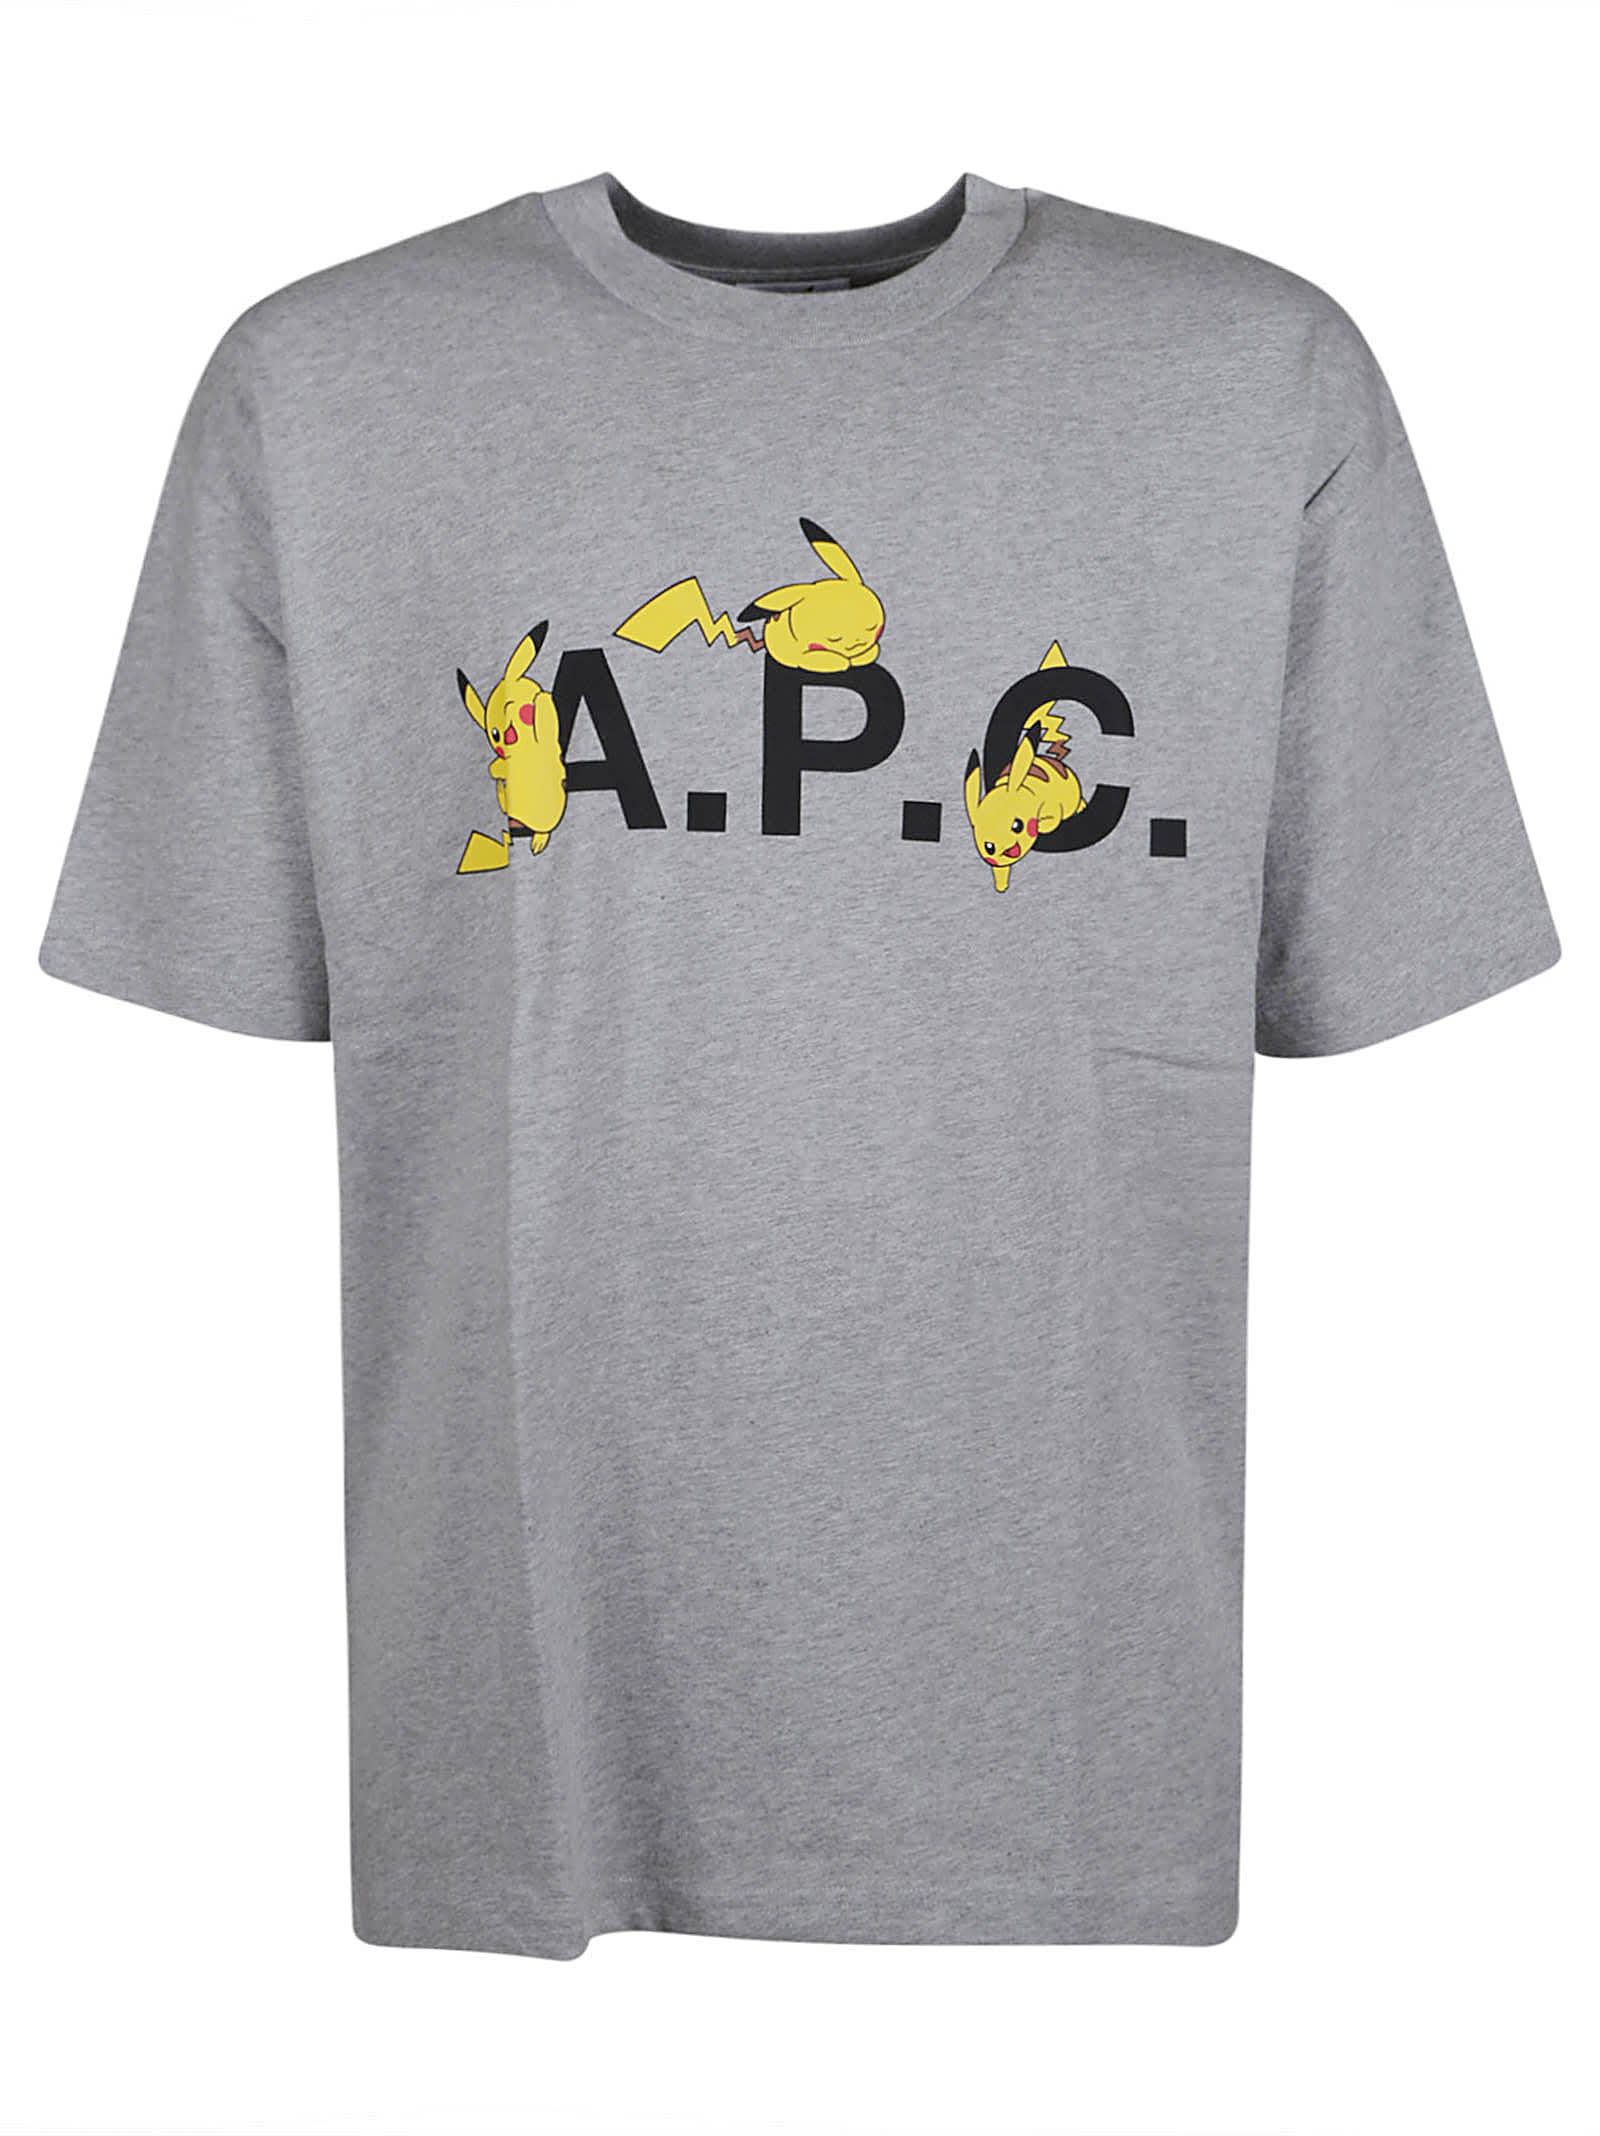 Apc Pikachu T-shirt In Gris Clair Ch.